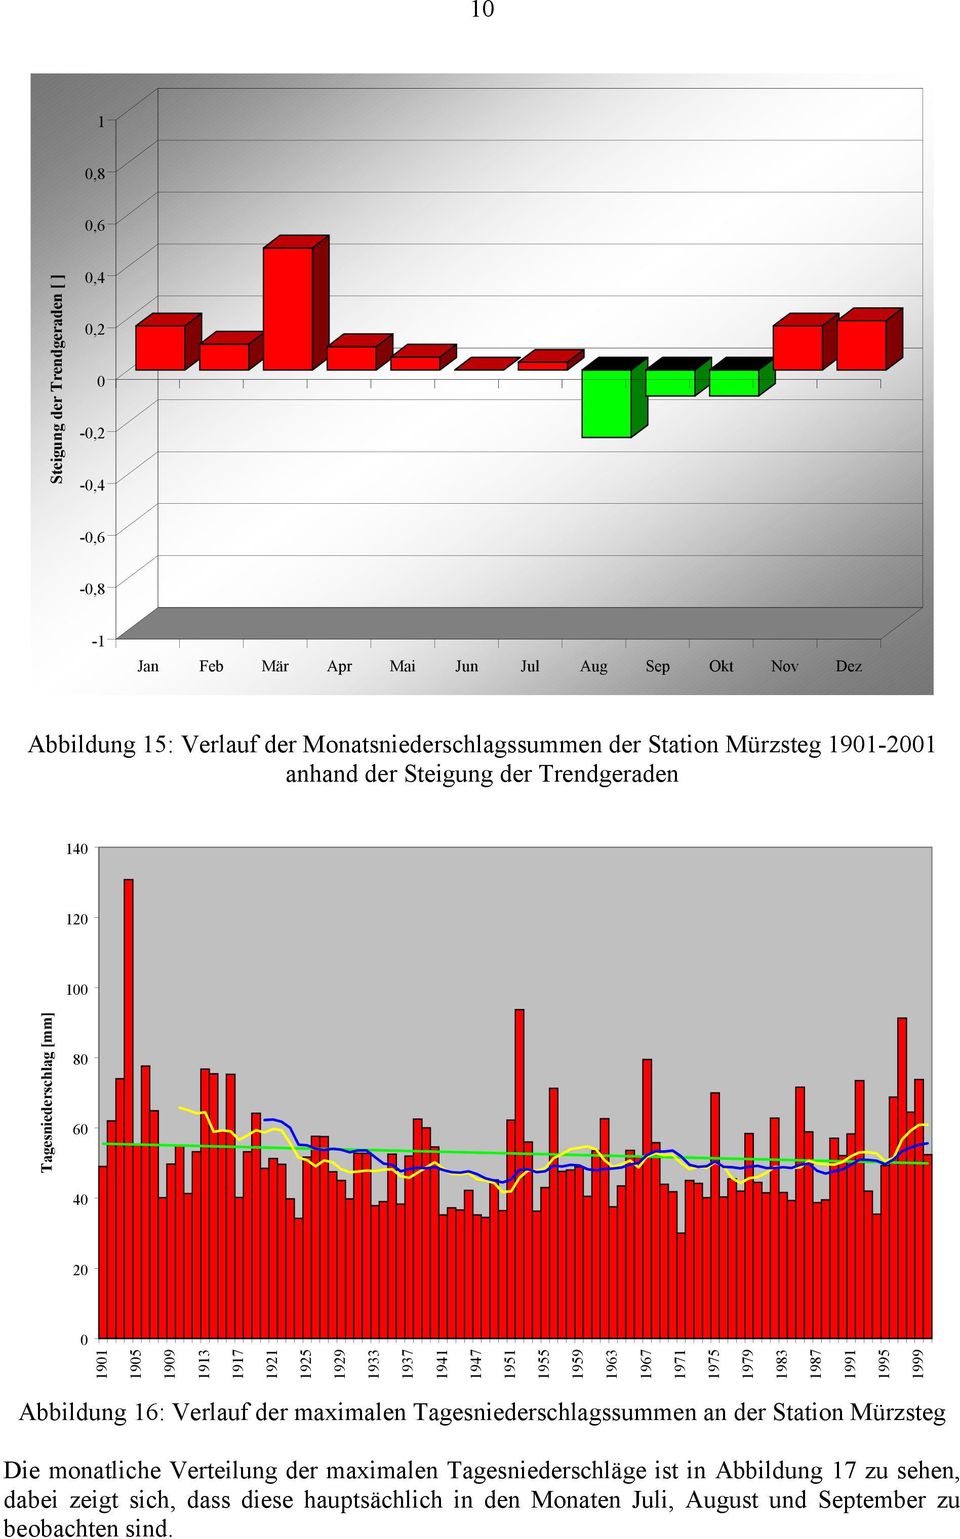 1975 1979 1983 1987 1991 1995 1999 Abbildung 16: Verlauf der maximalen Tagesniederschlagssummen an der Station Mürzsteg Die monatliche Verteilung der